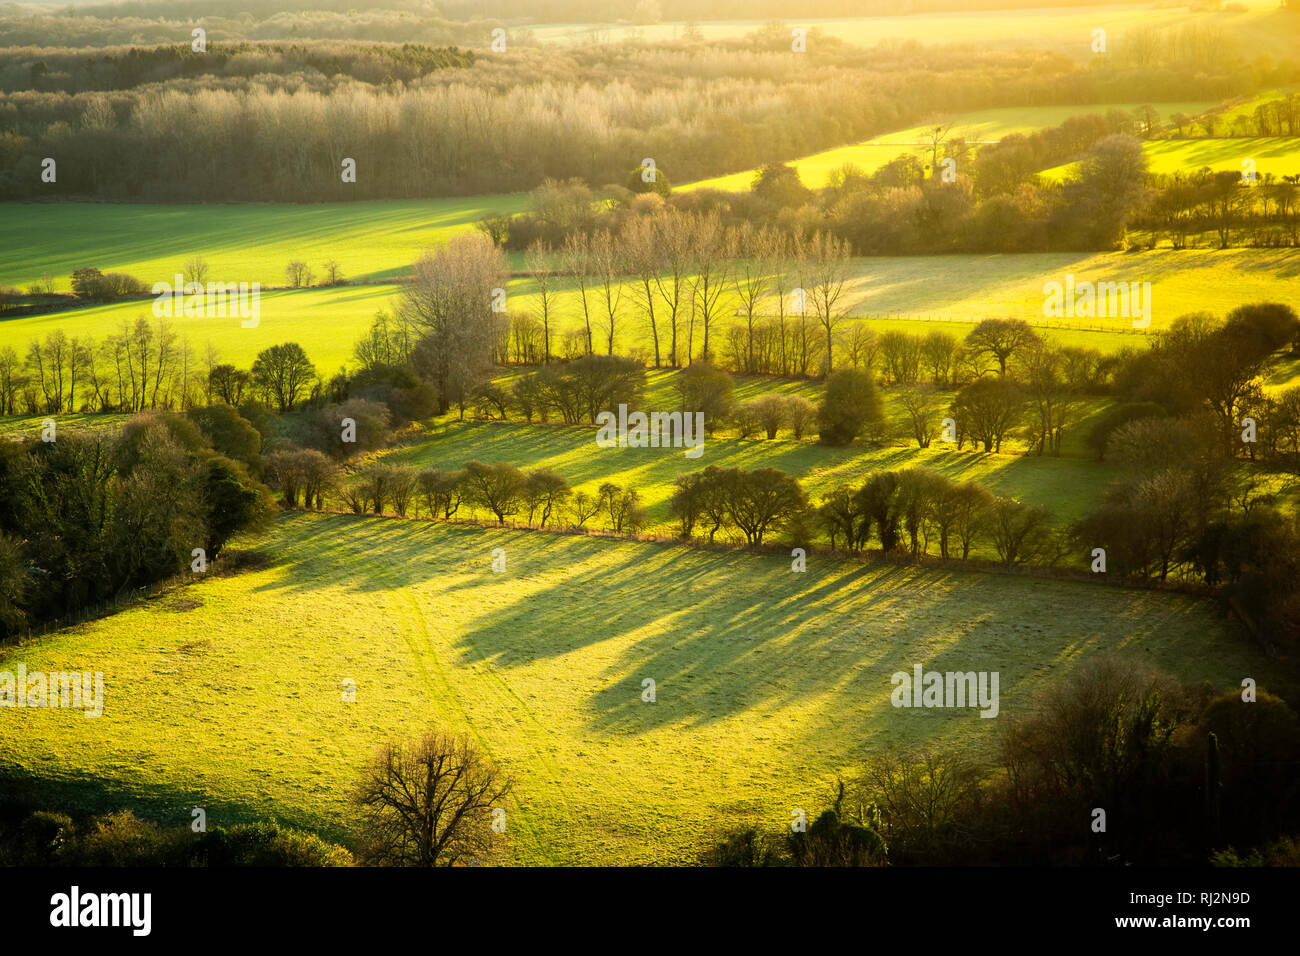 De longues ombres en vue dans cette scène des Kent Downs, Wye, Kent, Royaume-Uni des champs verts et des arbres ci-dessous. Prise en fin d'après-midi en janvier. Banque D'Images